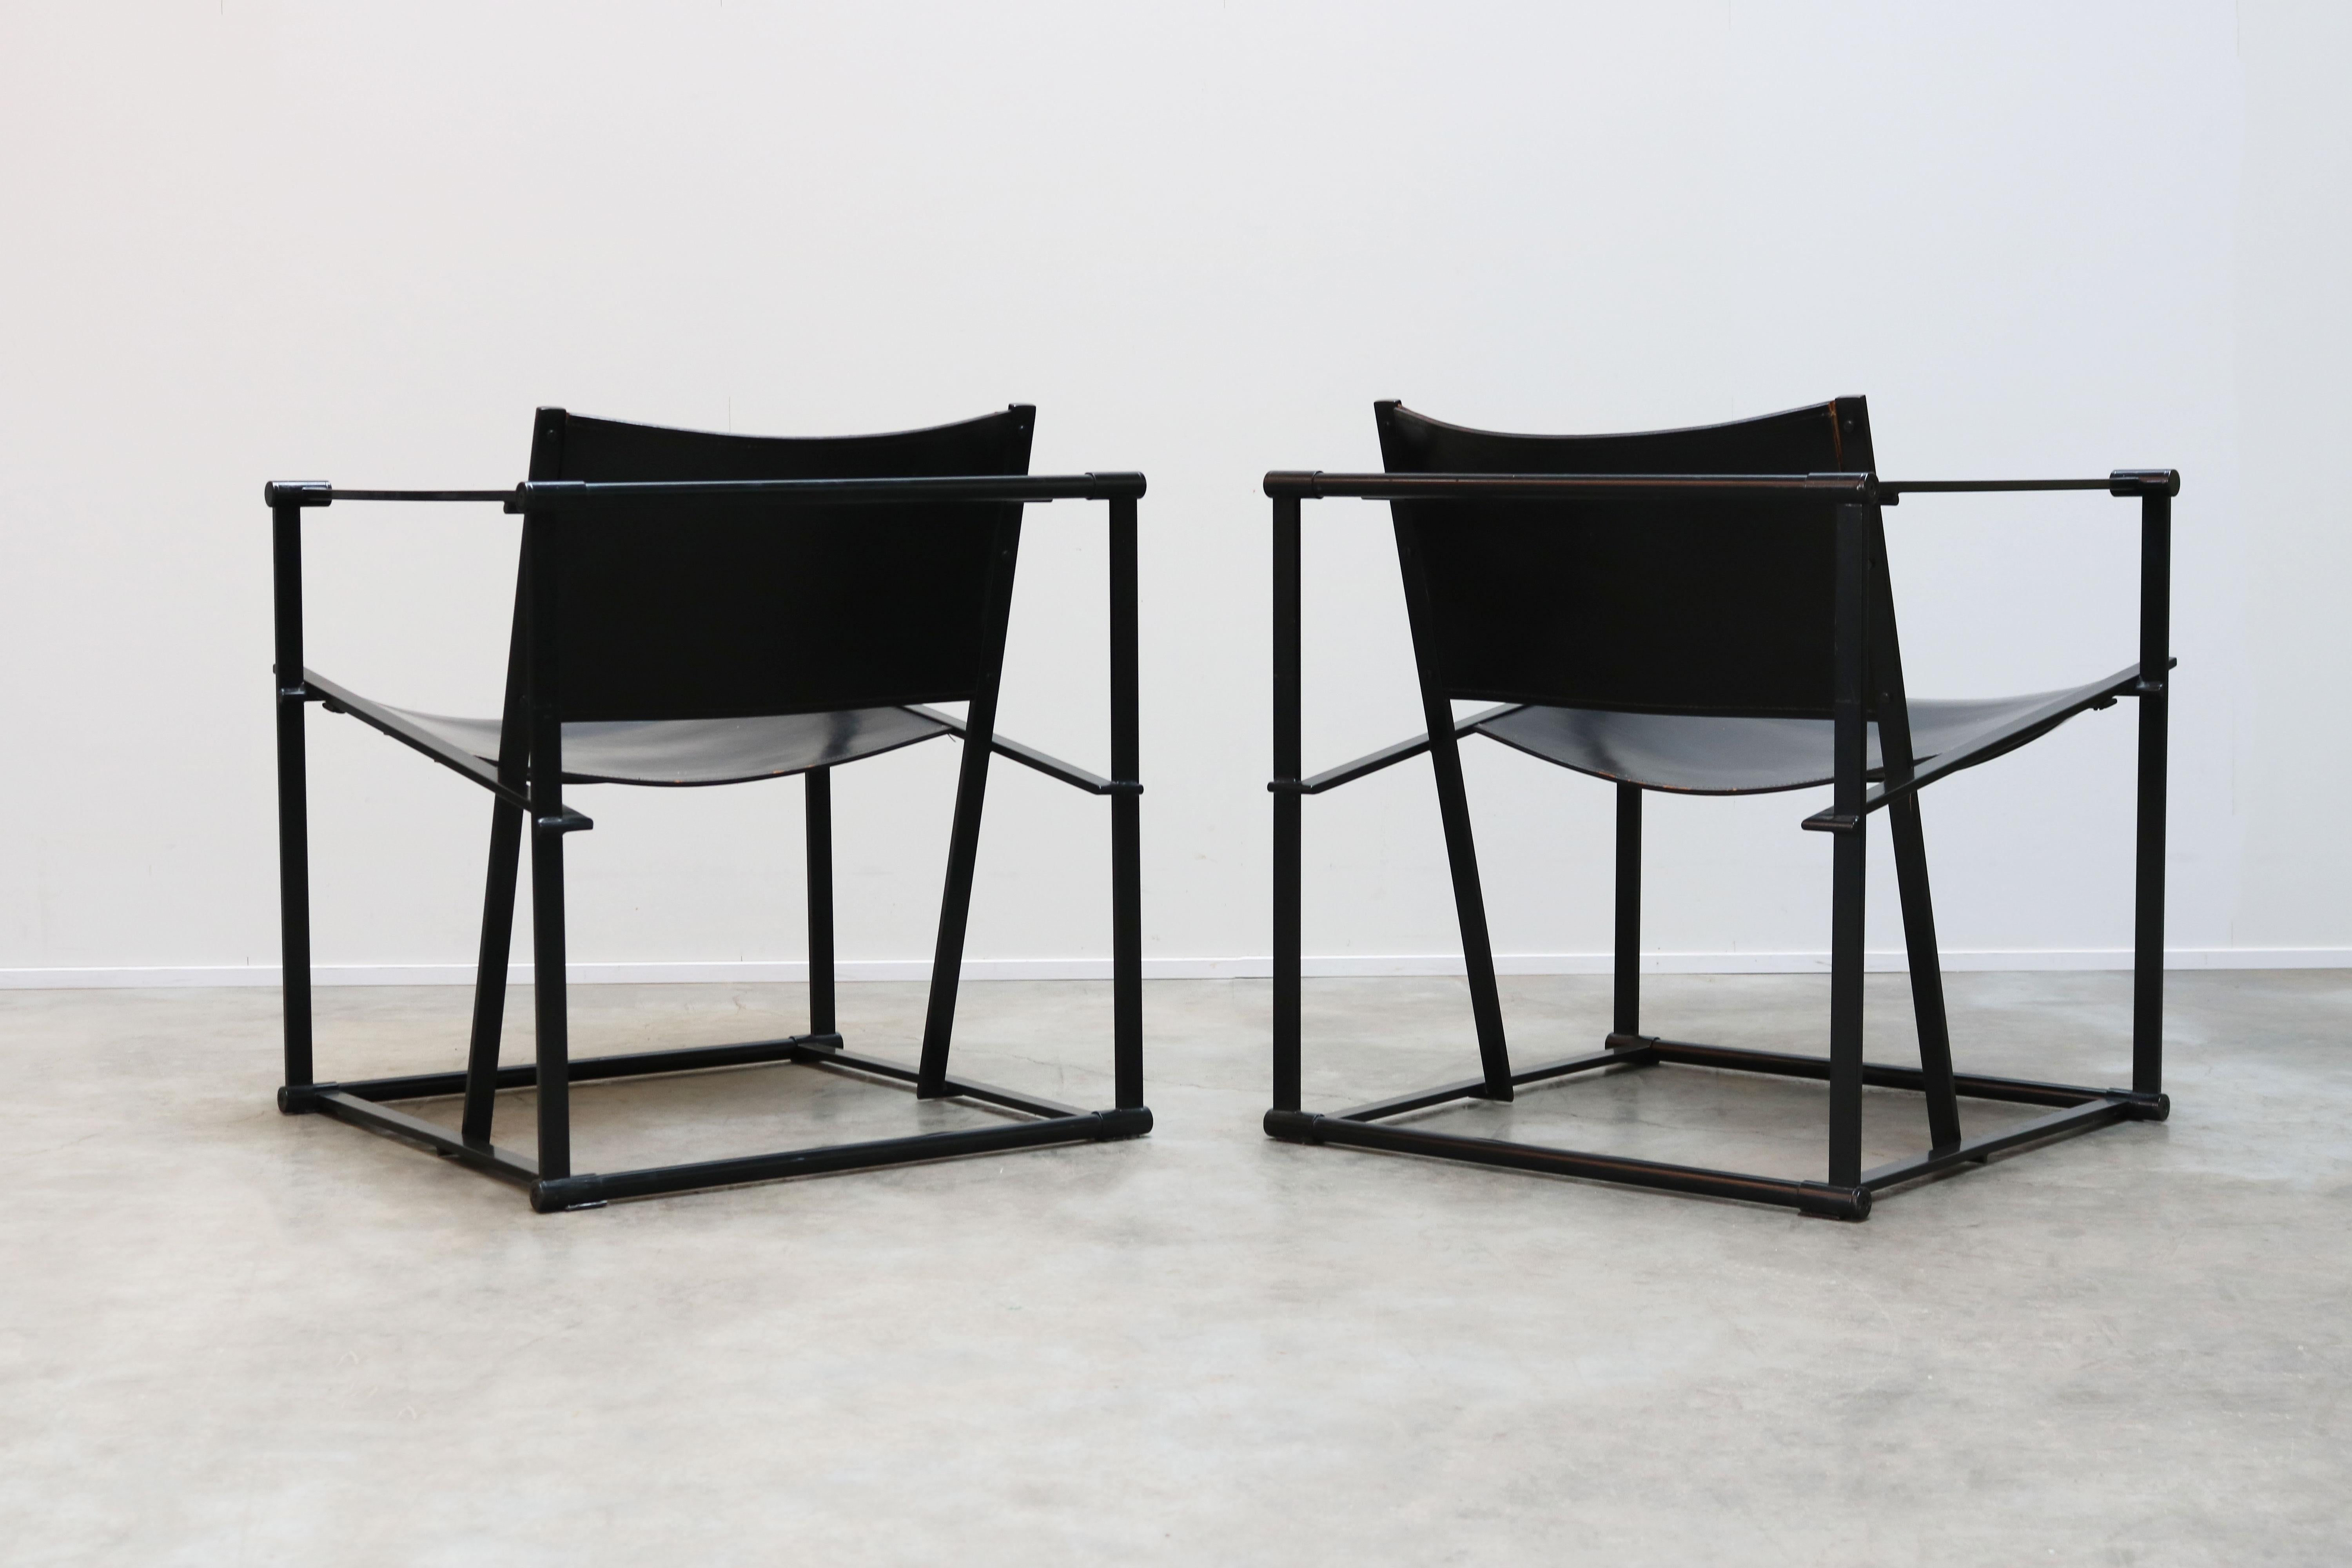 Pair of Steel and Black Leather FM62 Chairs by Radboud Van Beekum for Pastoe 1